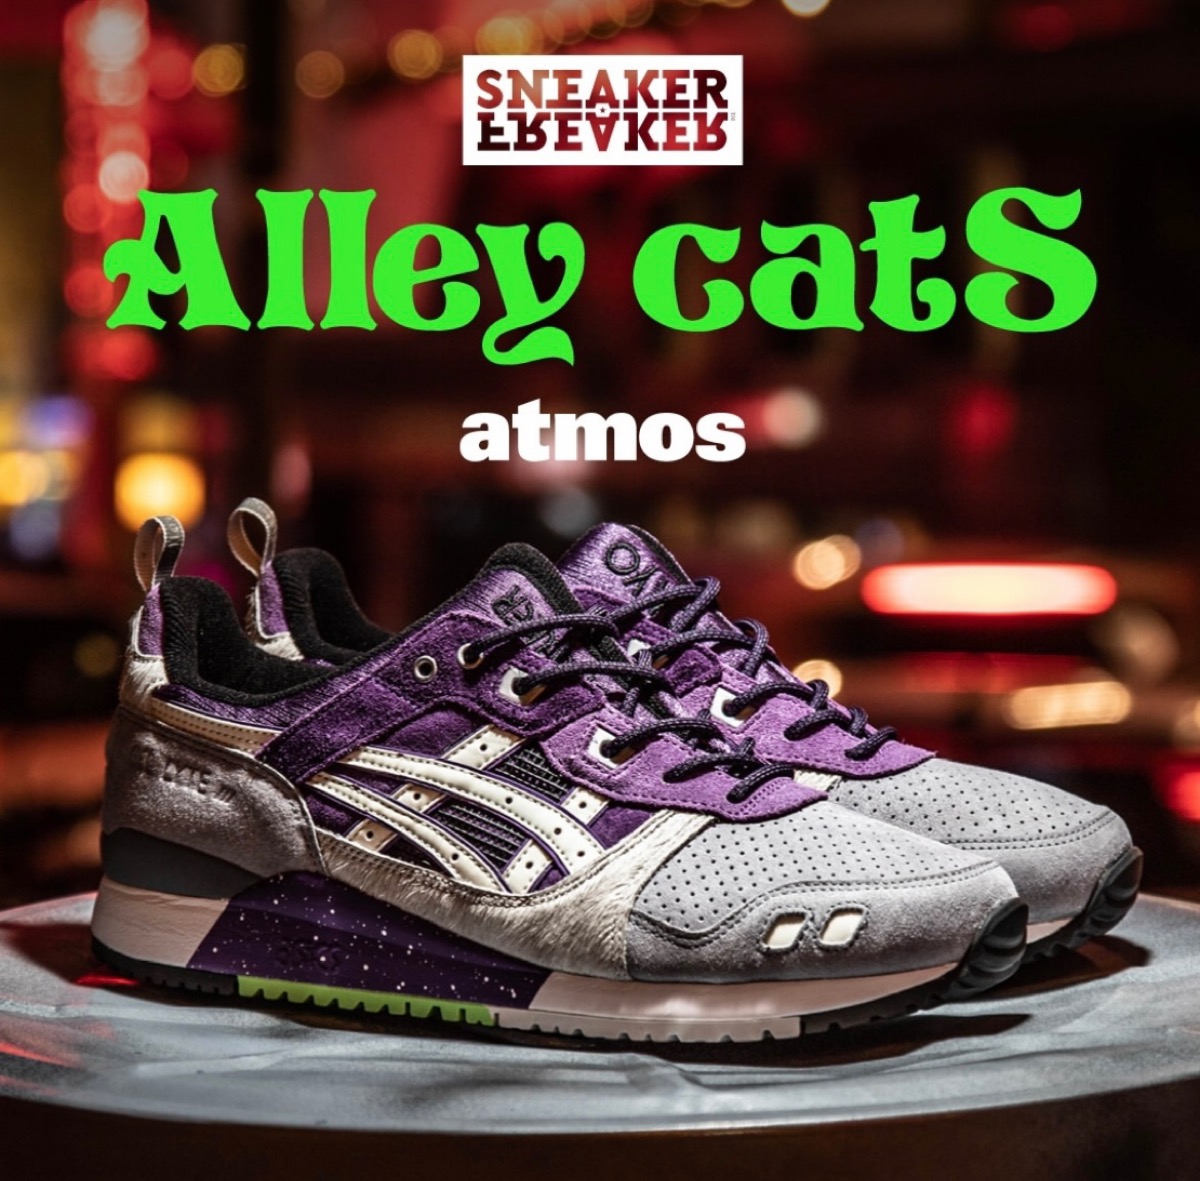 atmos × SNEAKER FREAKER × ASICS GEL-LYTE III OG “Alley Cats”が国内 